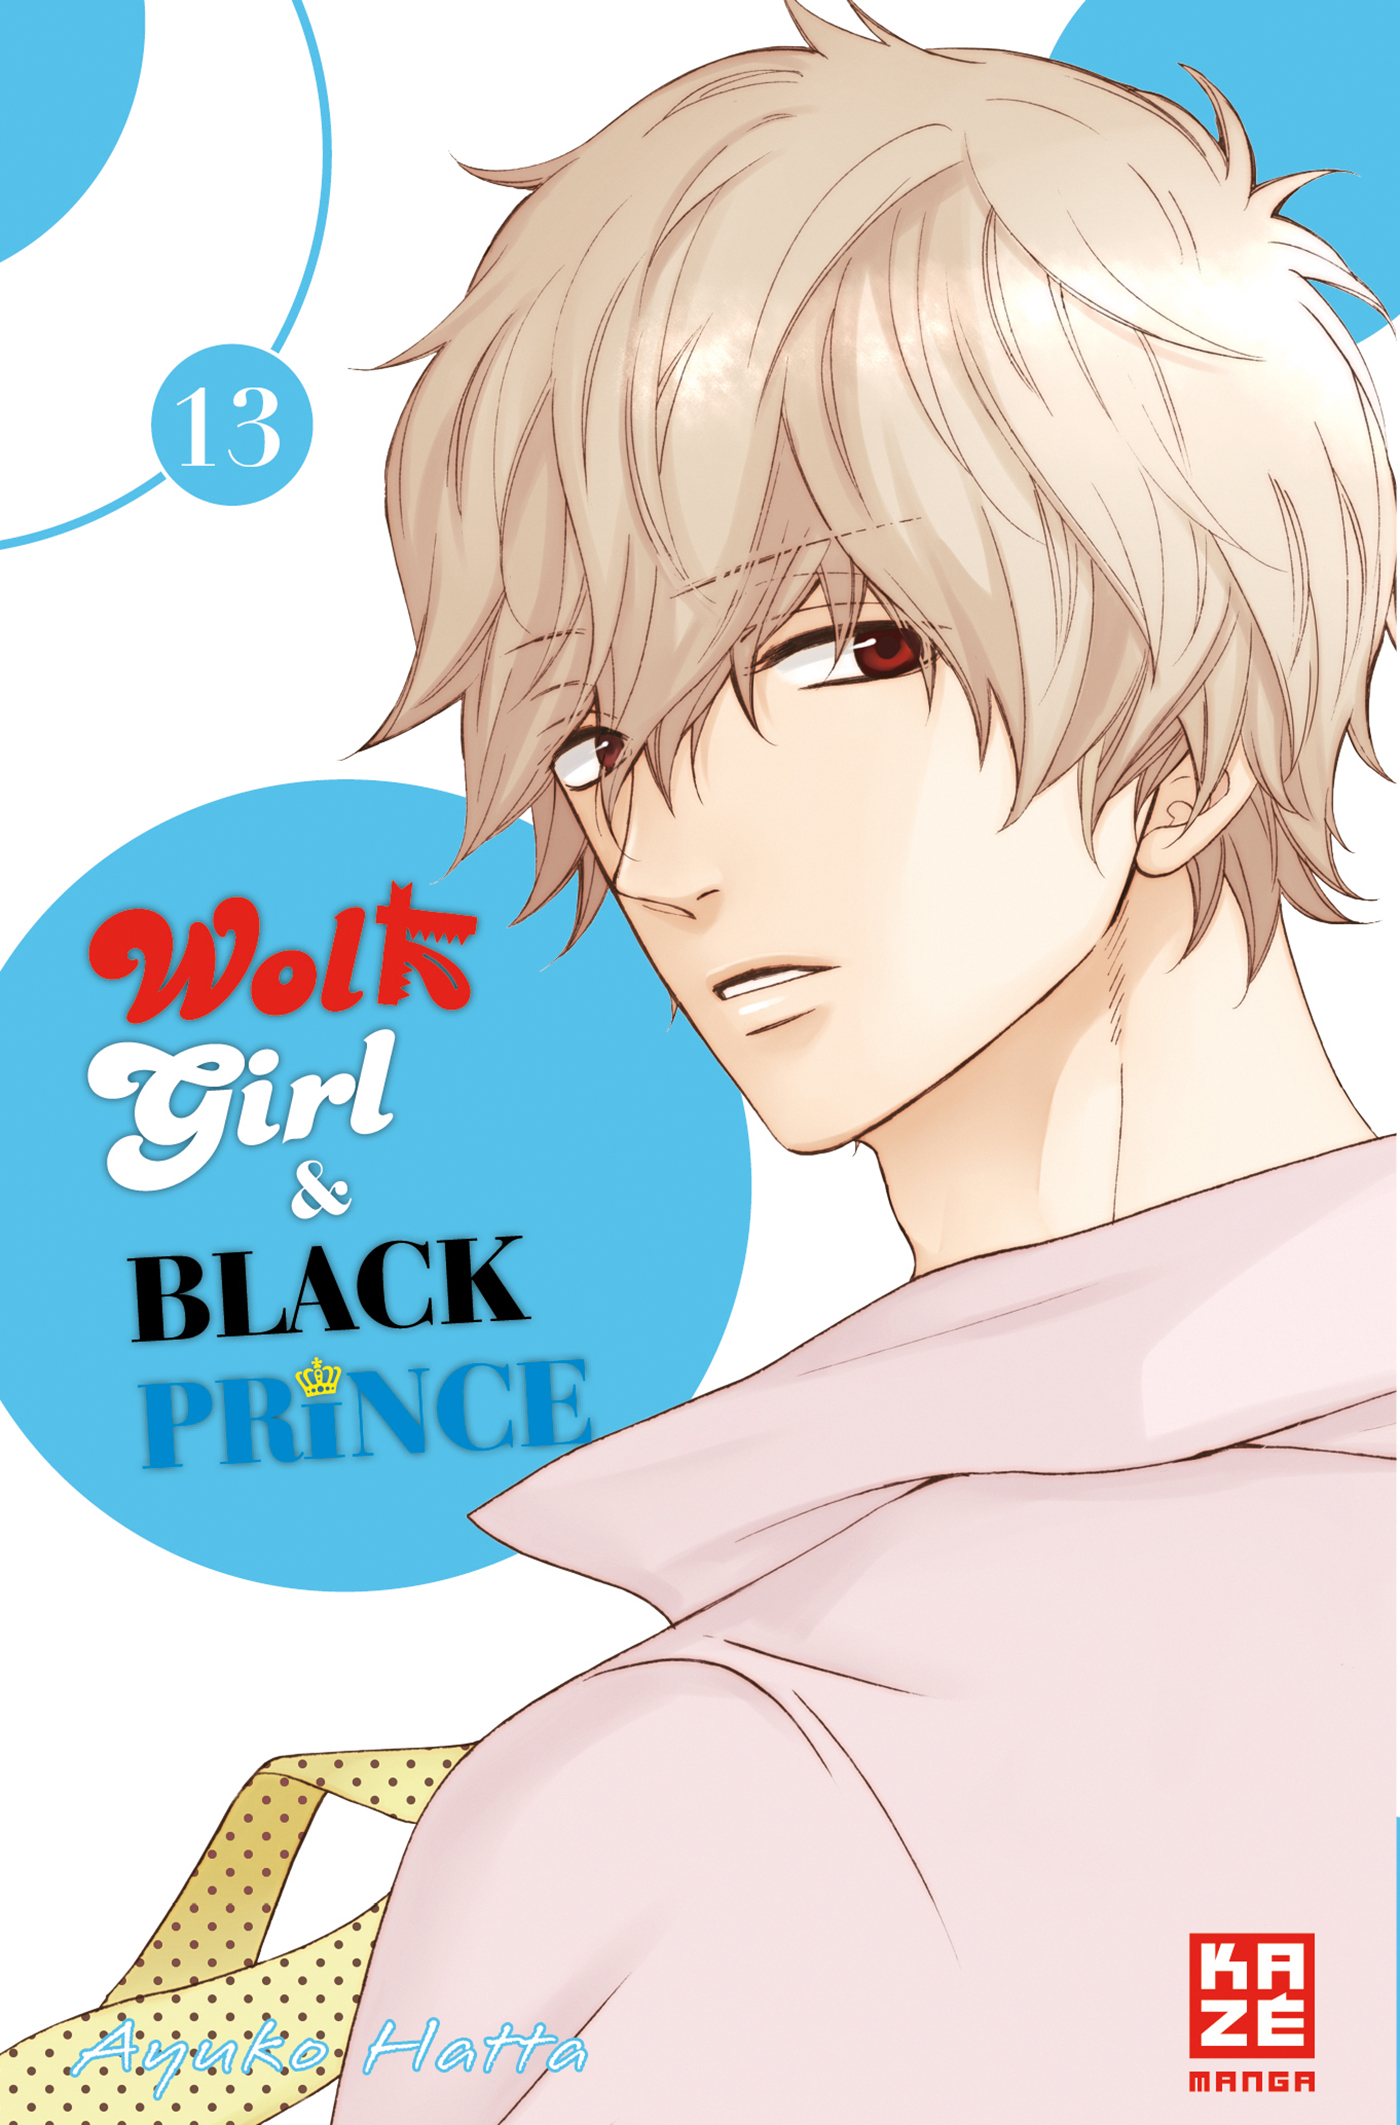 Girl Wolf Prince Black – & Band 13